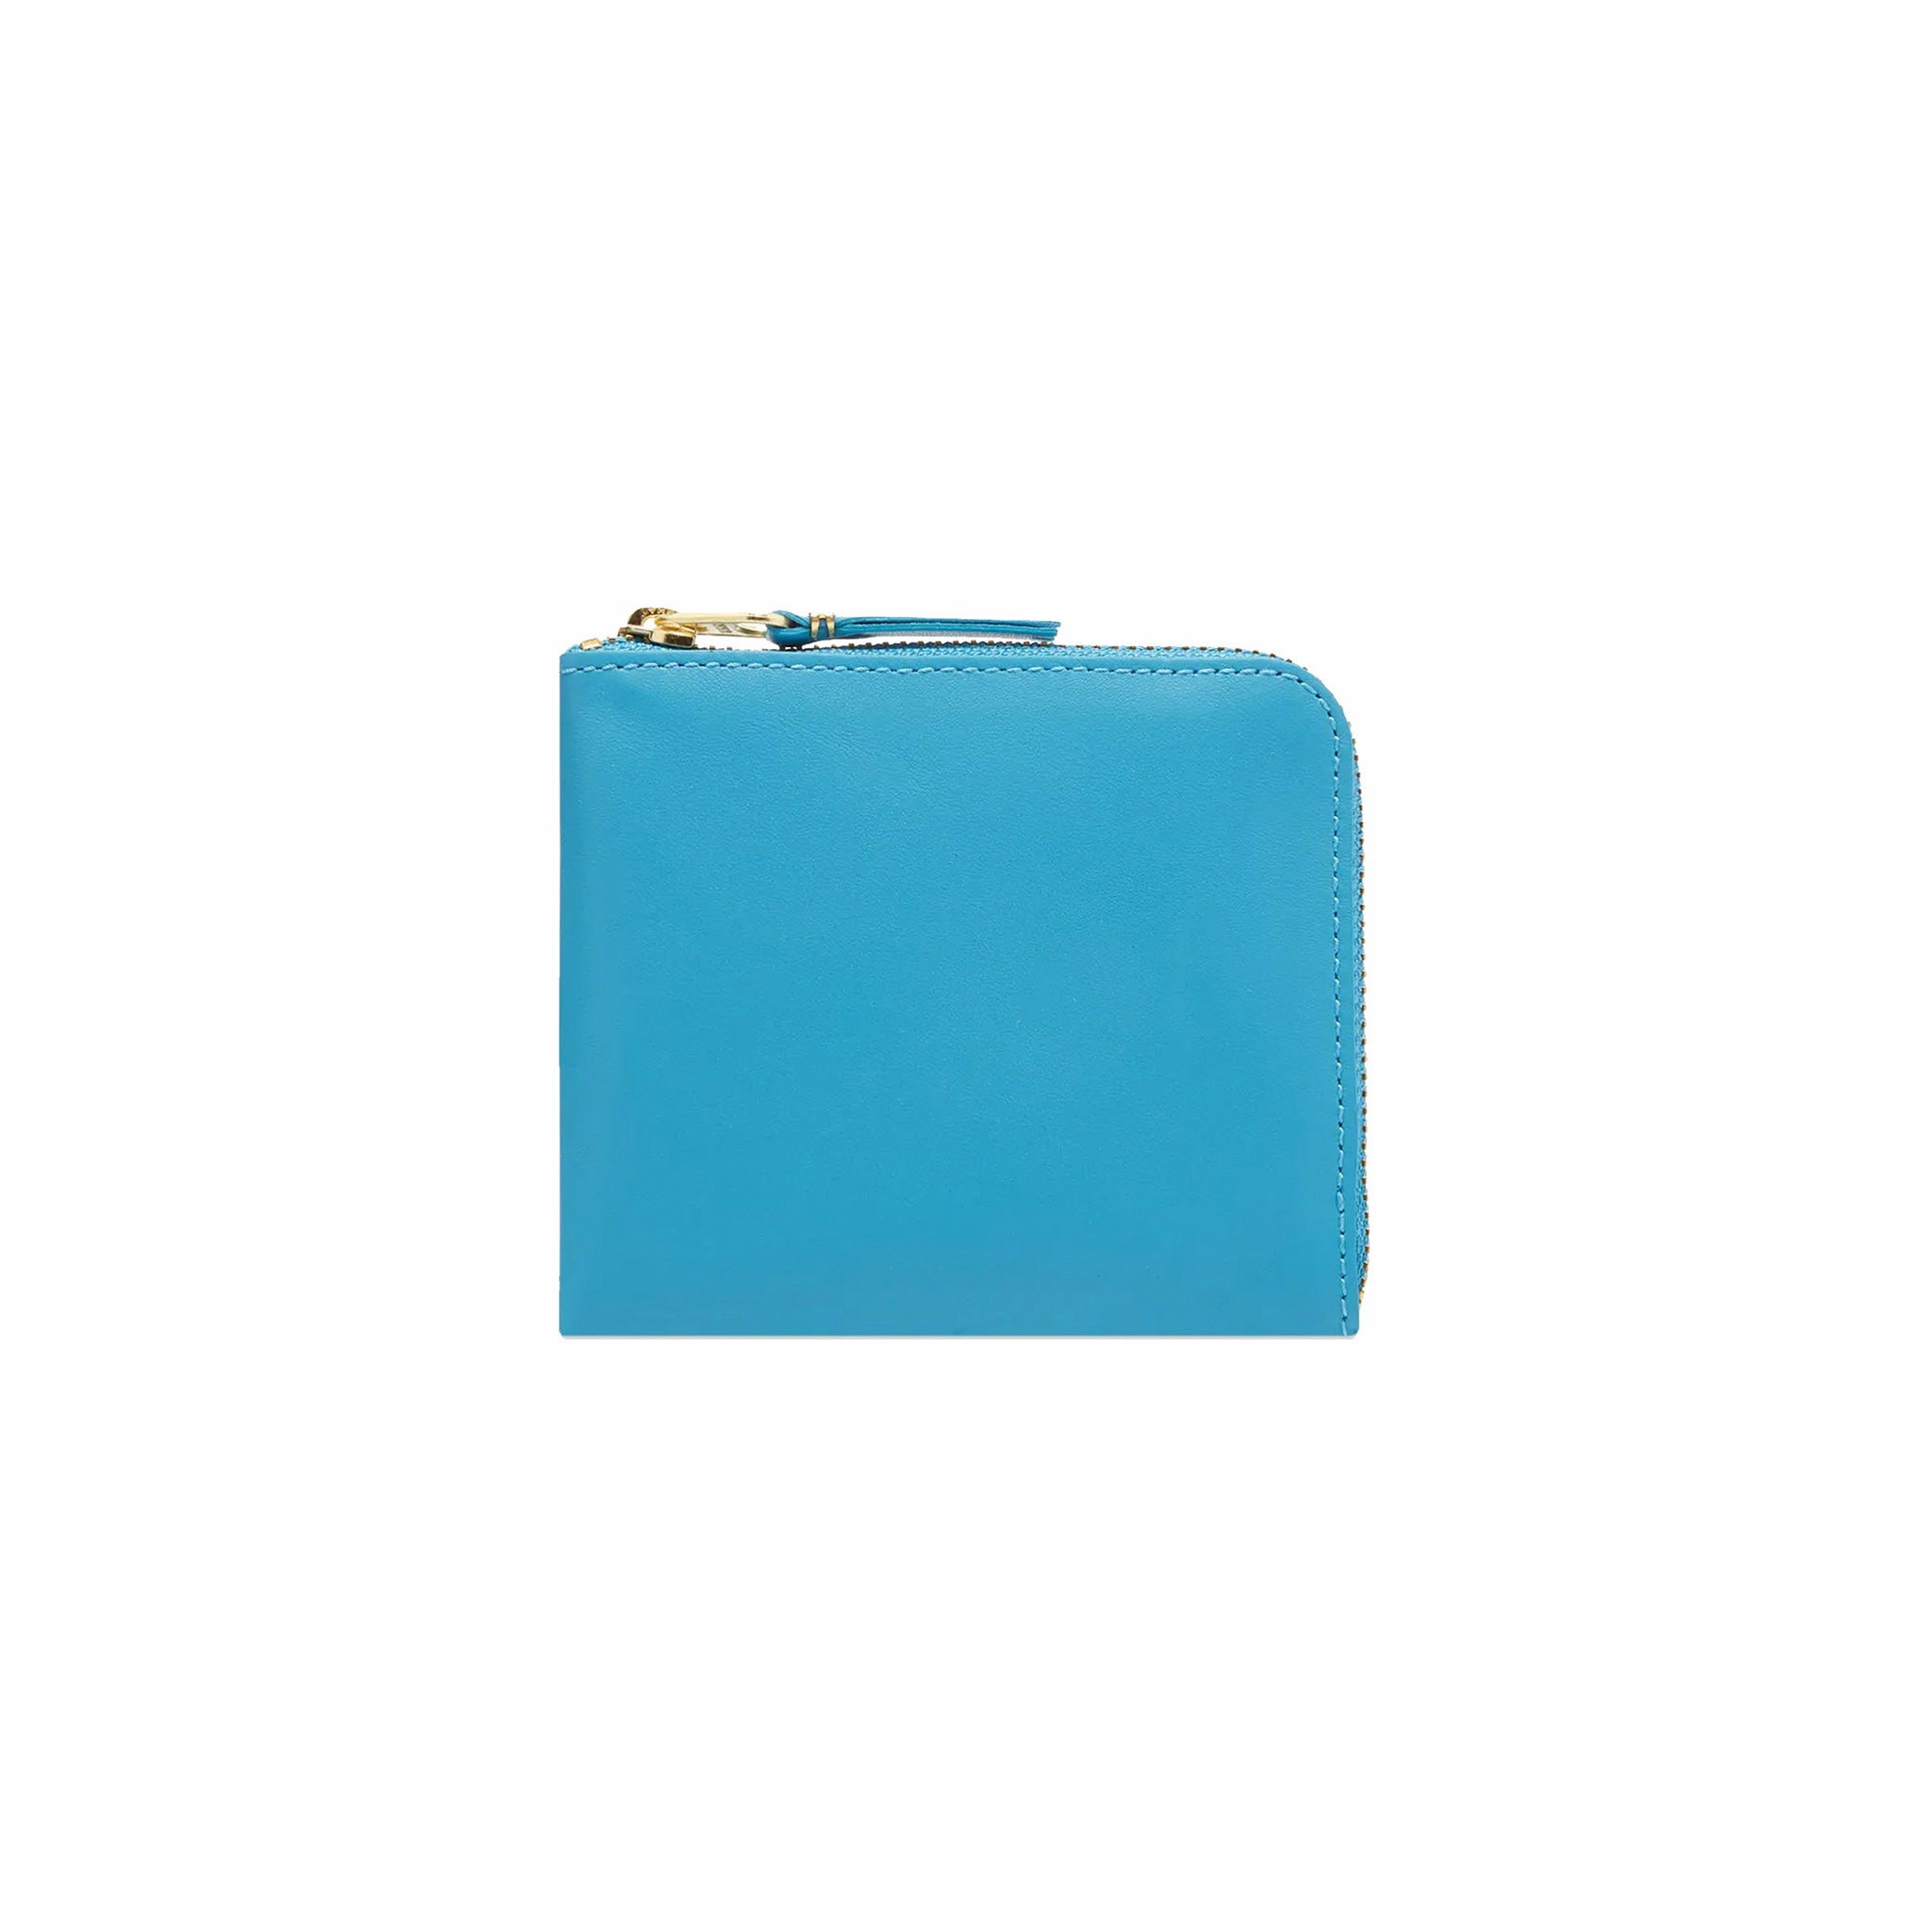 Comme des Garçons Classic Leather Wallet (Blue) SA3100 - August Shop